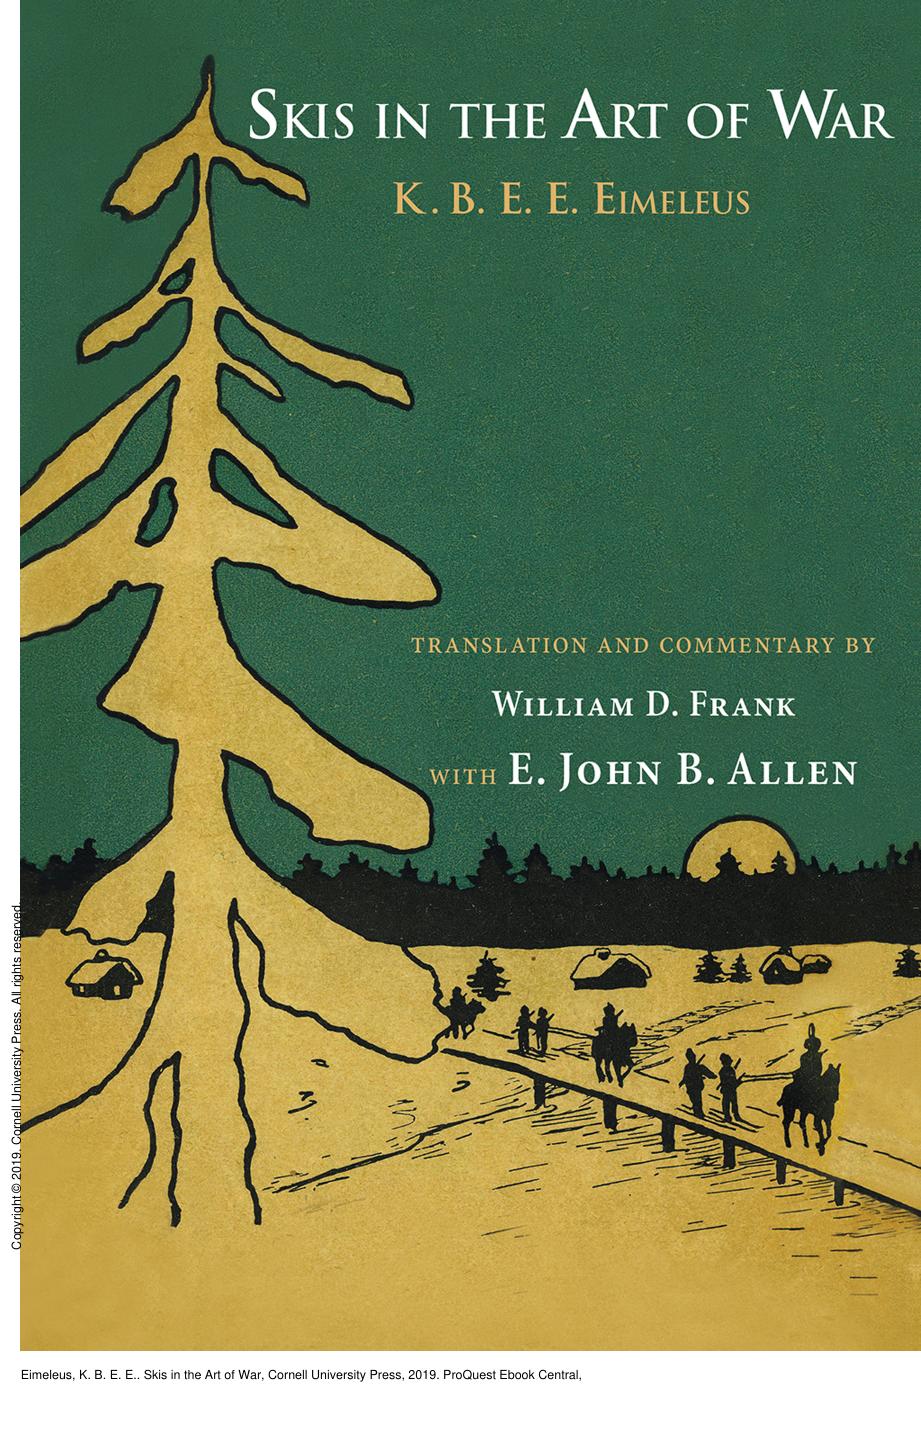 Skis in the Art of War by K. B. E. E. Eimeleus; William D. Frank; E. John B. Allen